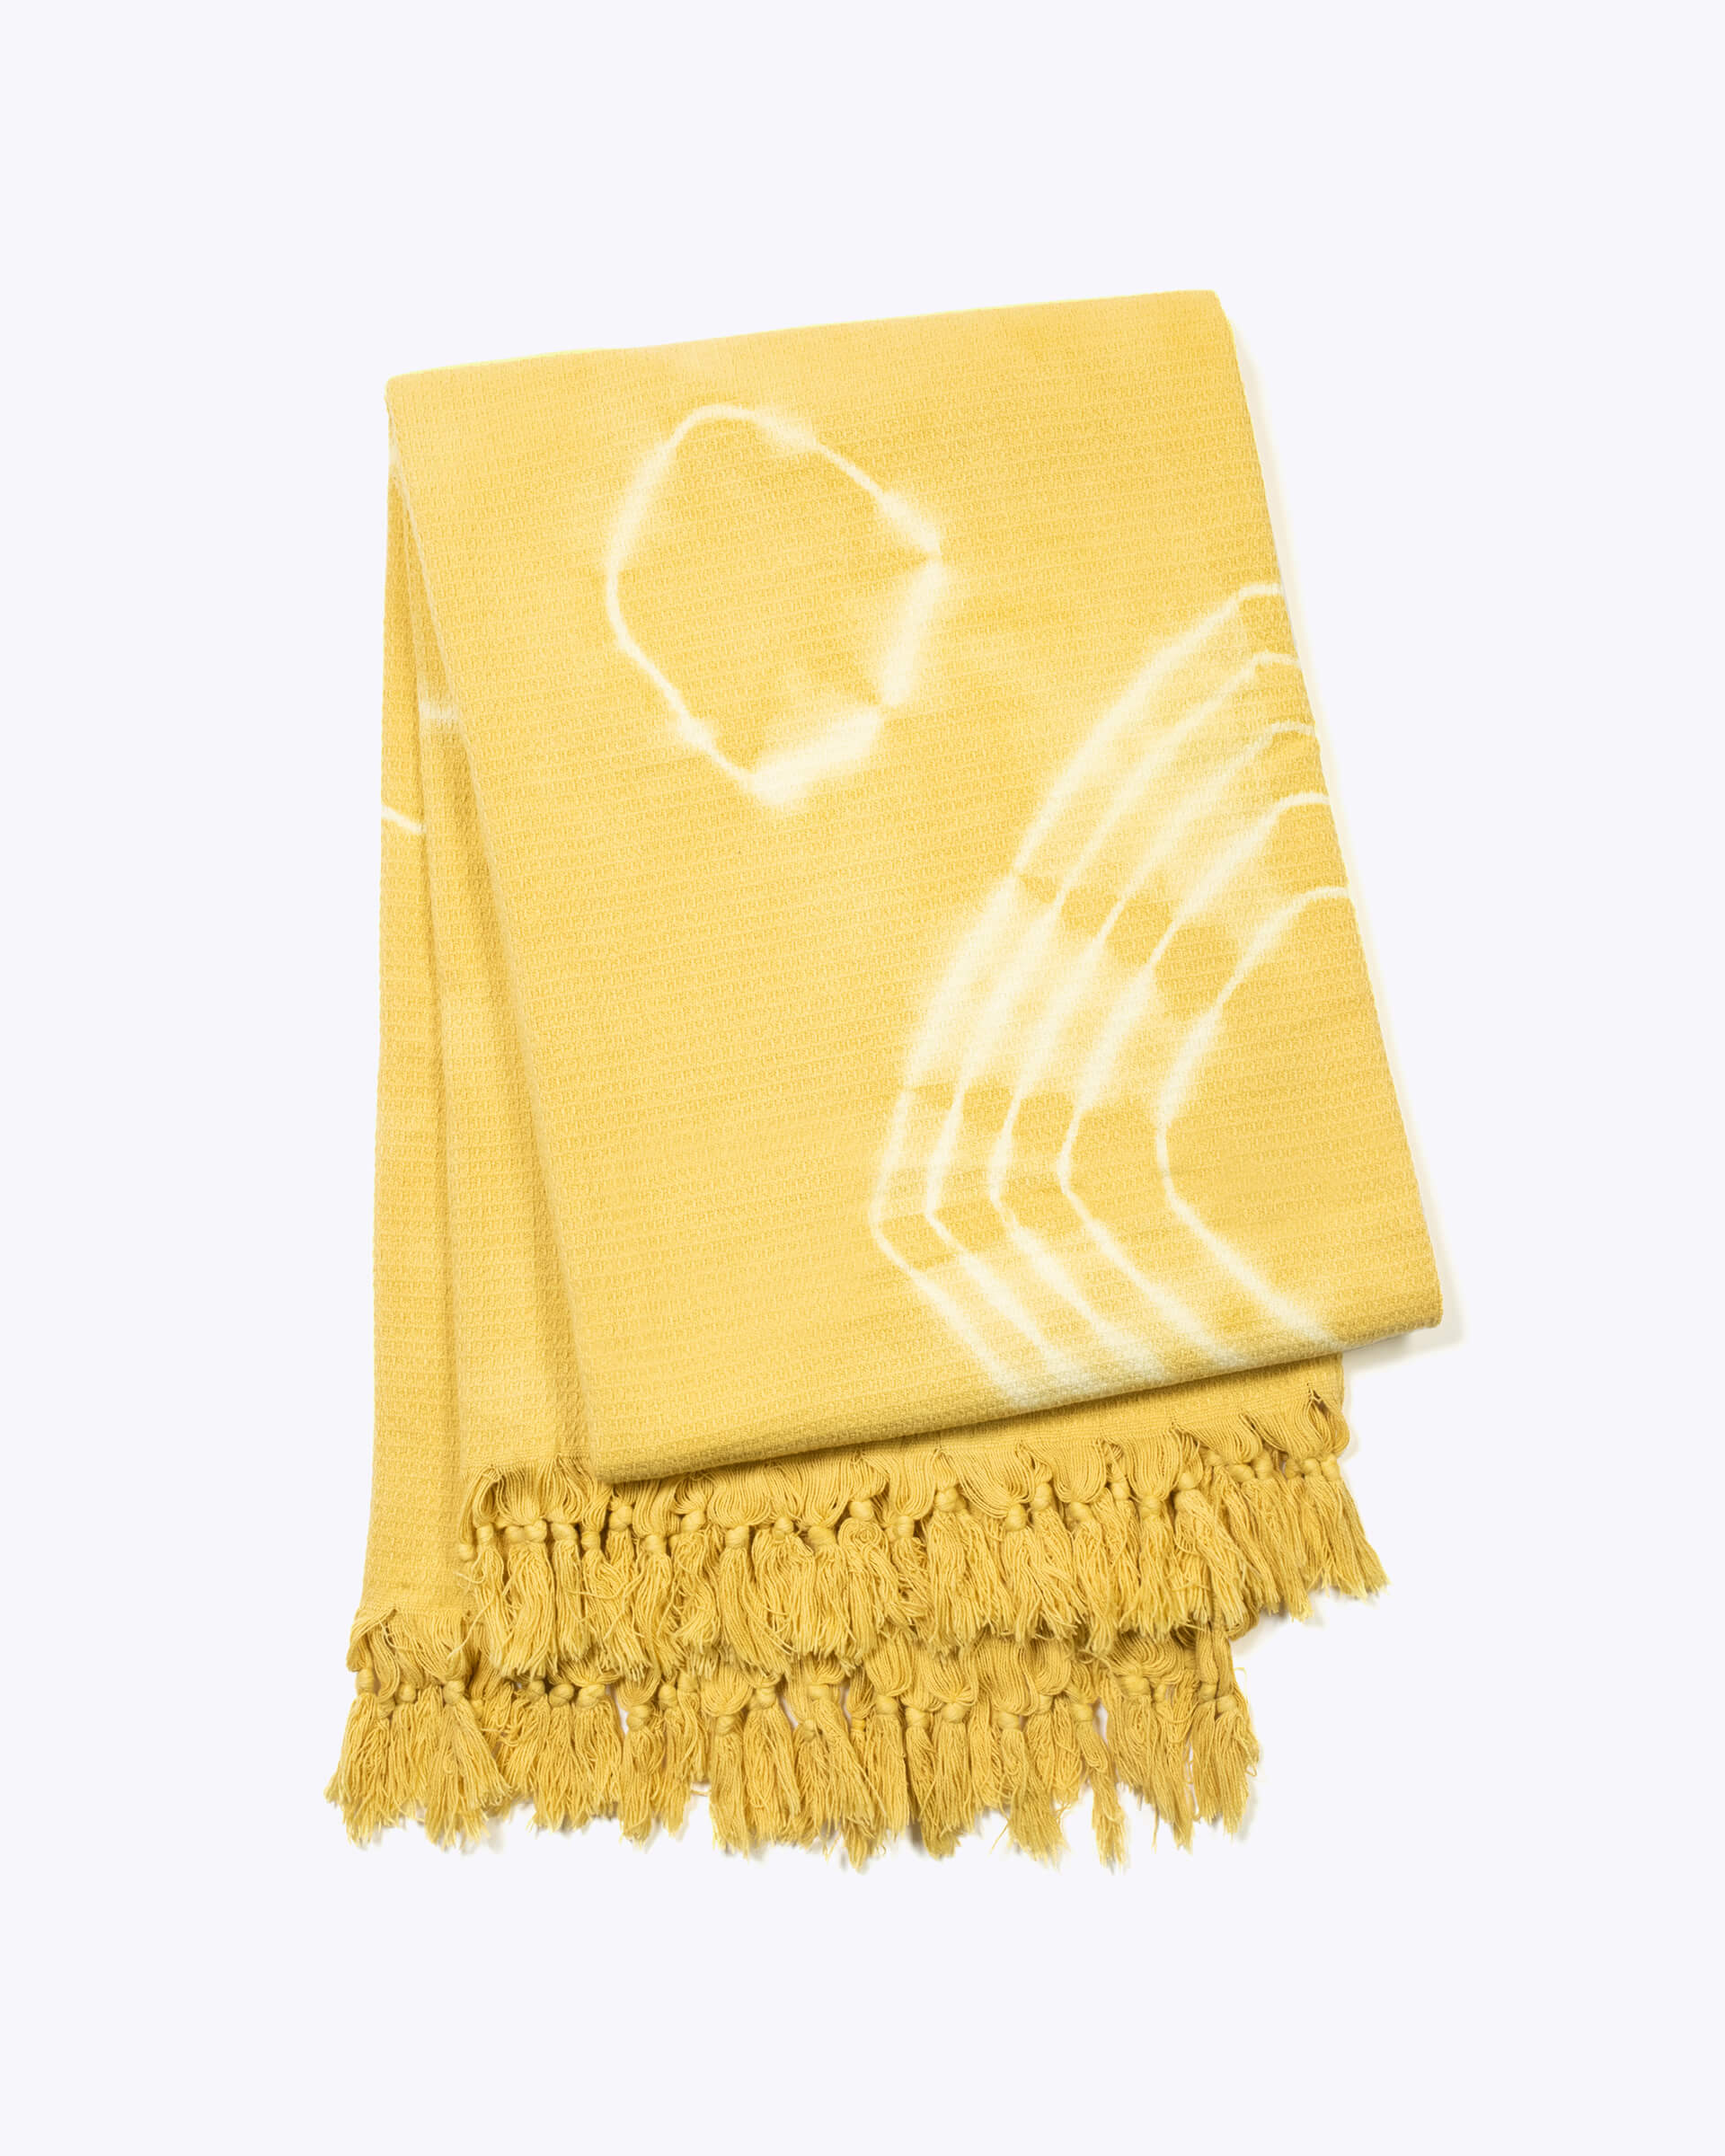 yellow hand-dyed shibori blanket with fringe folded up on a white background